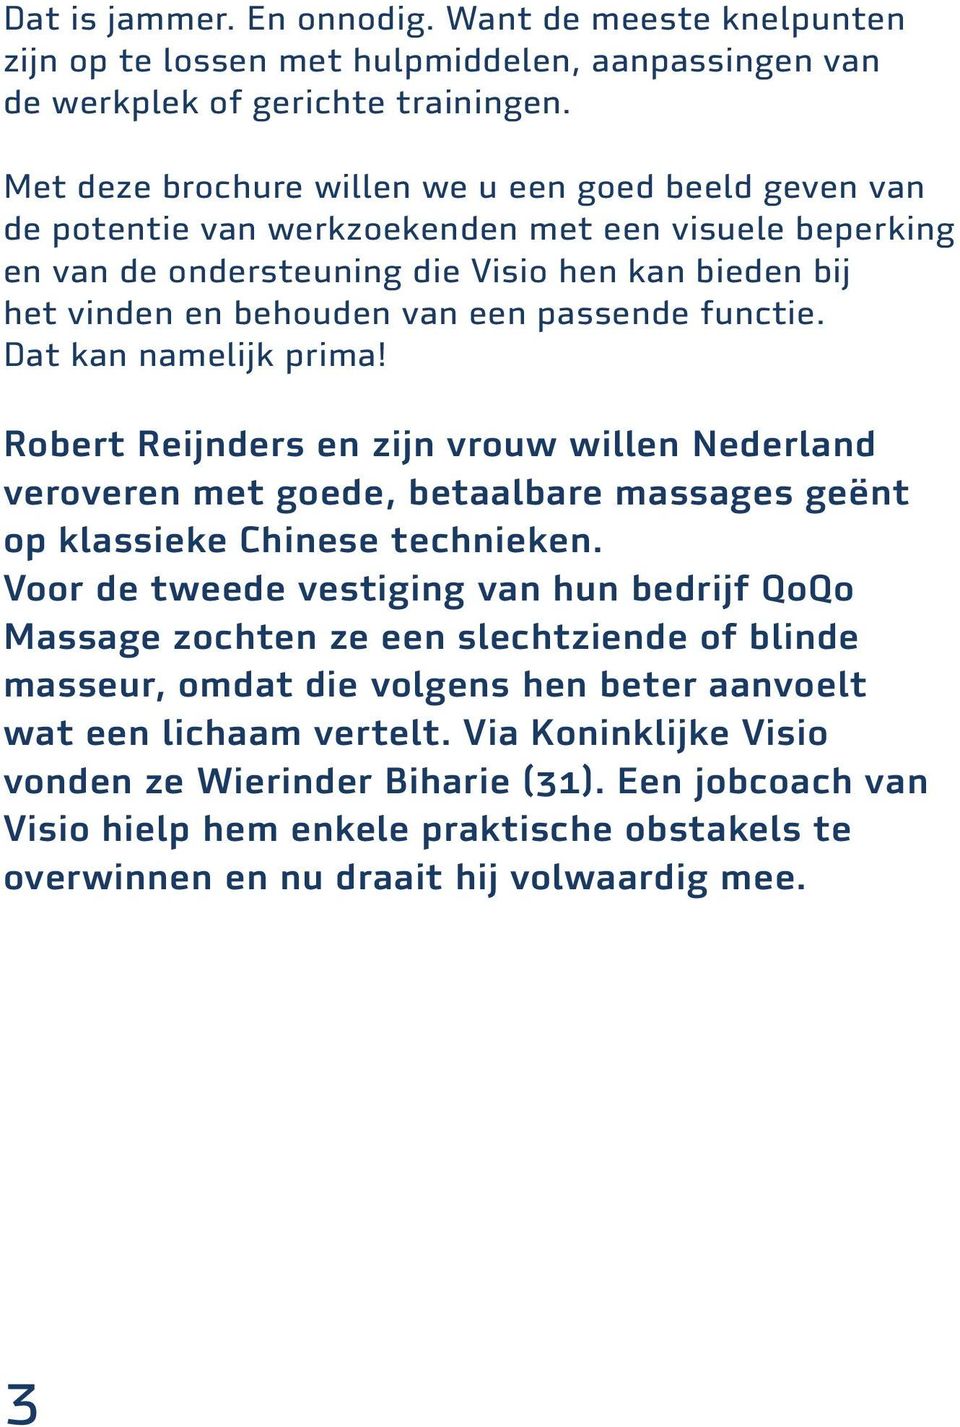 passende functie. Dat kan namelijk prima! Robert Reijnders en zijn vrouw willen Nederland veroveren met goede, betaalbare massages geënt op klassieke Chinese technieken.